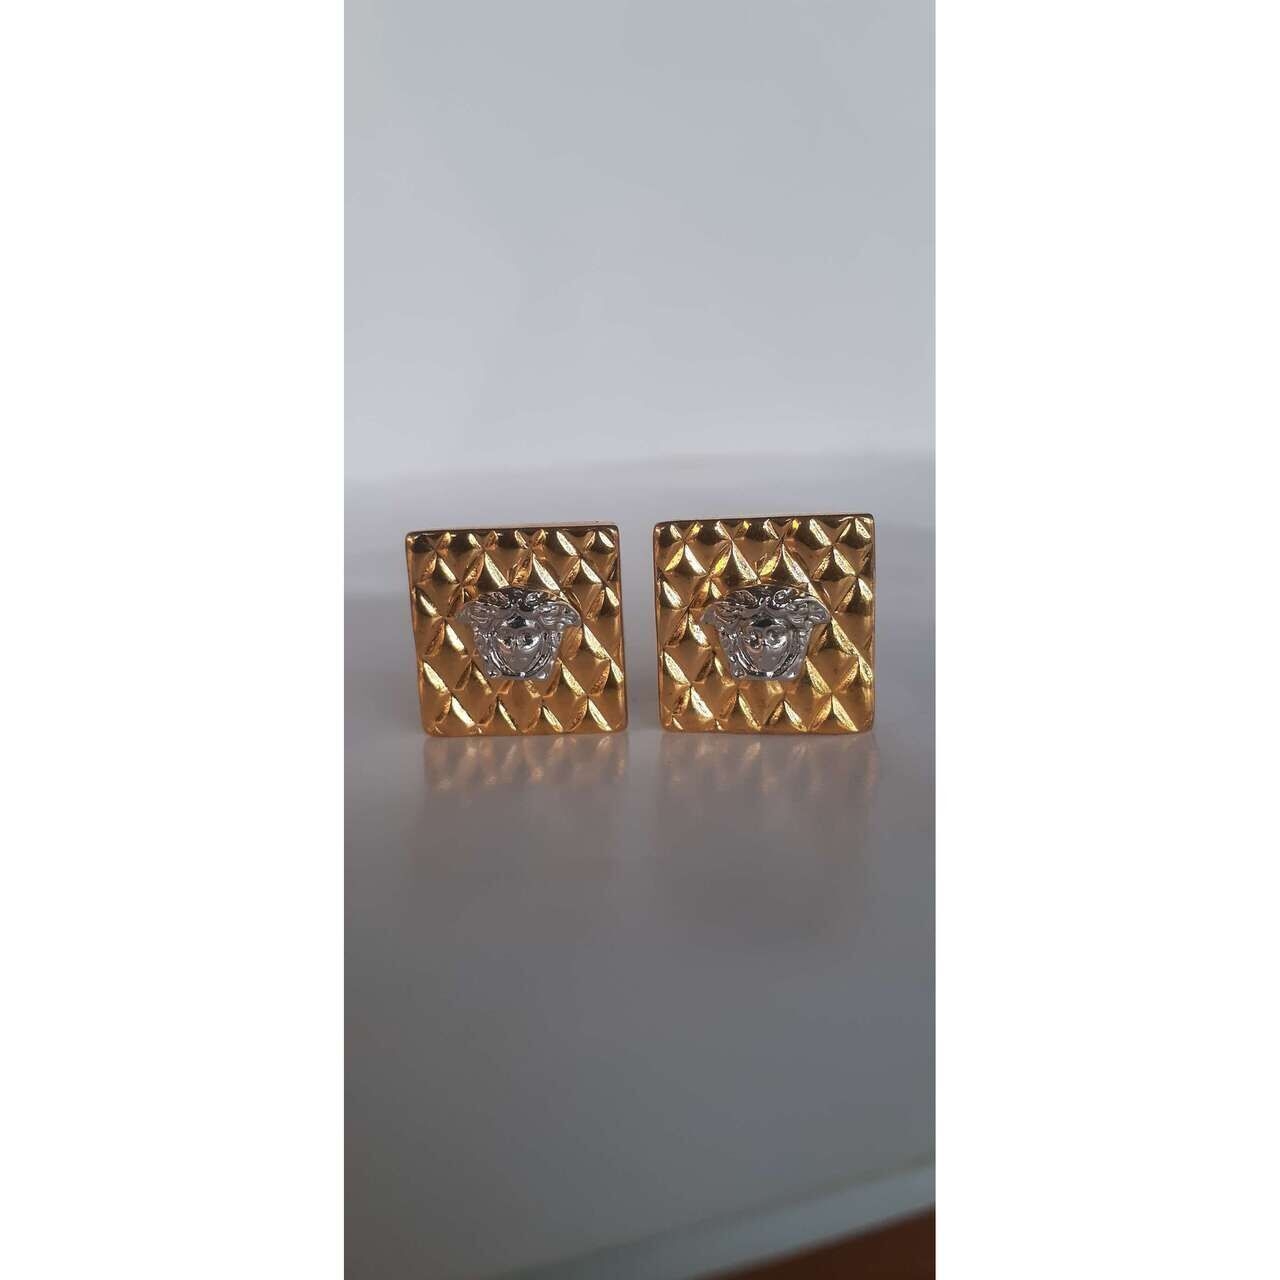 Gianni Versace Earrings Medusa Silver & Gold 